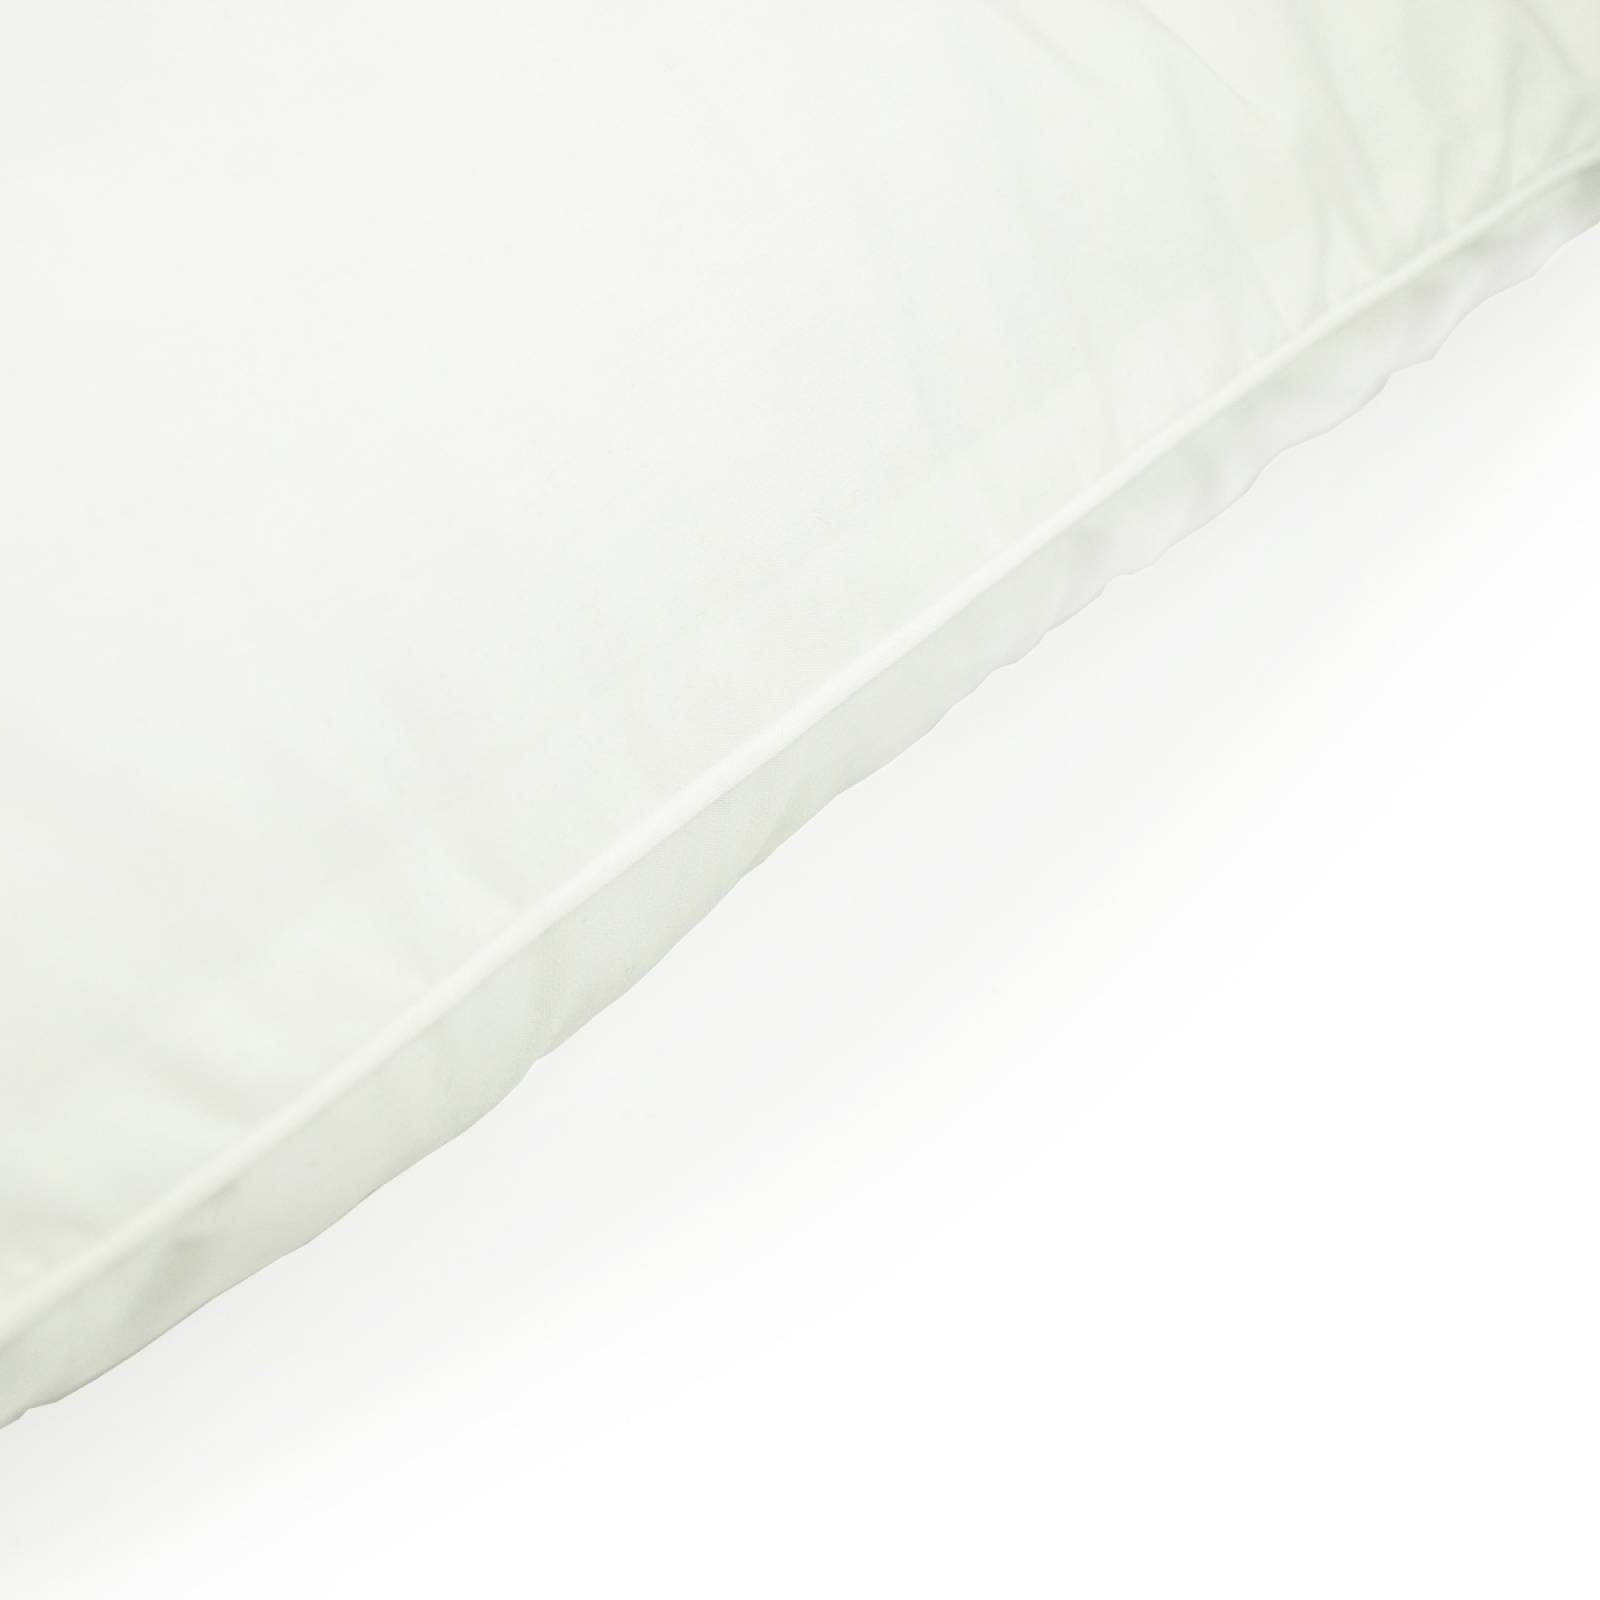 Almohada Spring Air Maxicomfort pillow - Firme Estándar